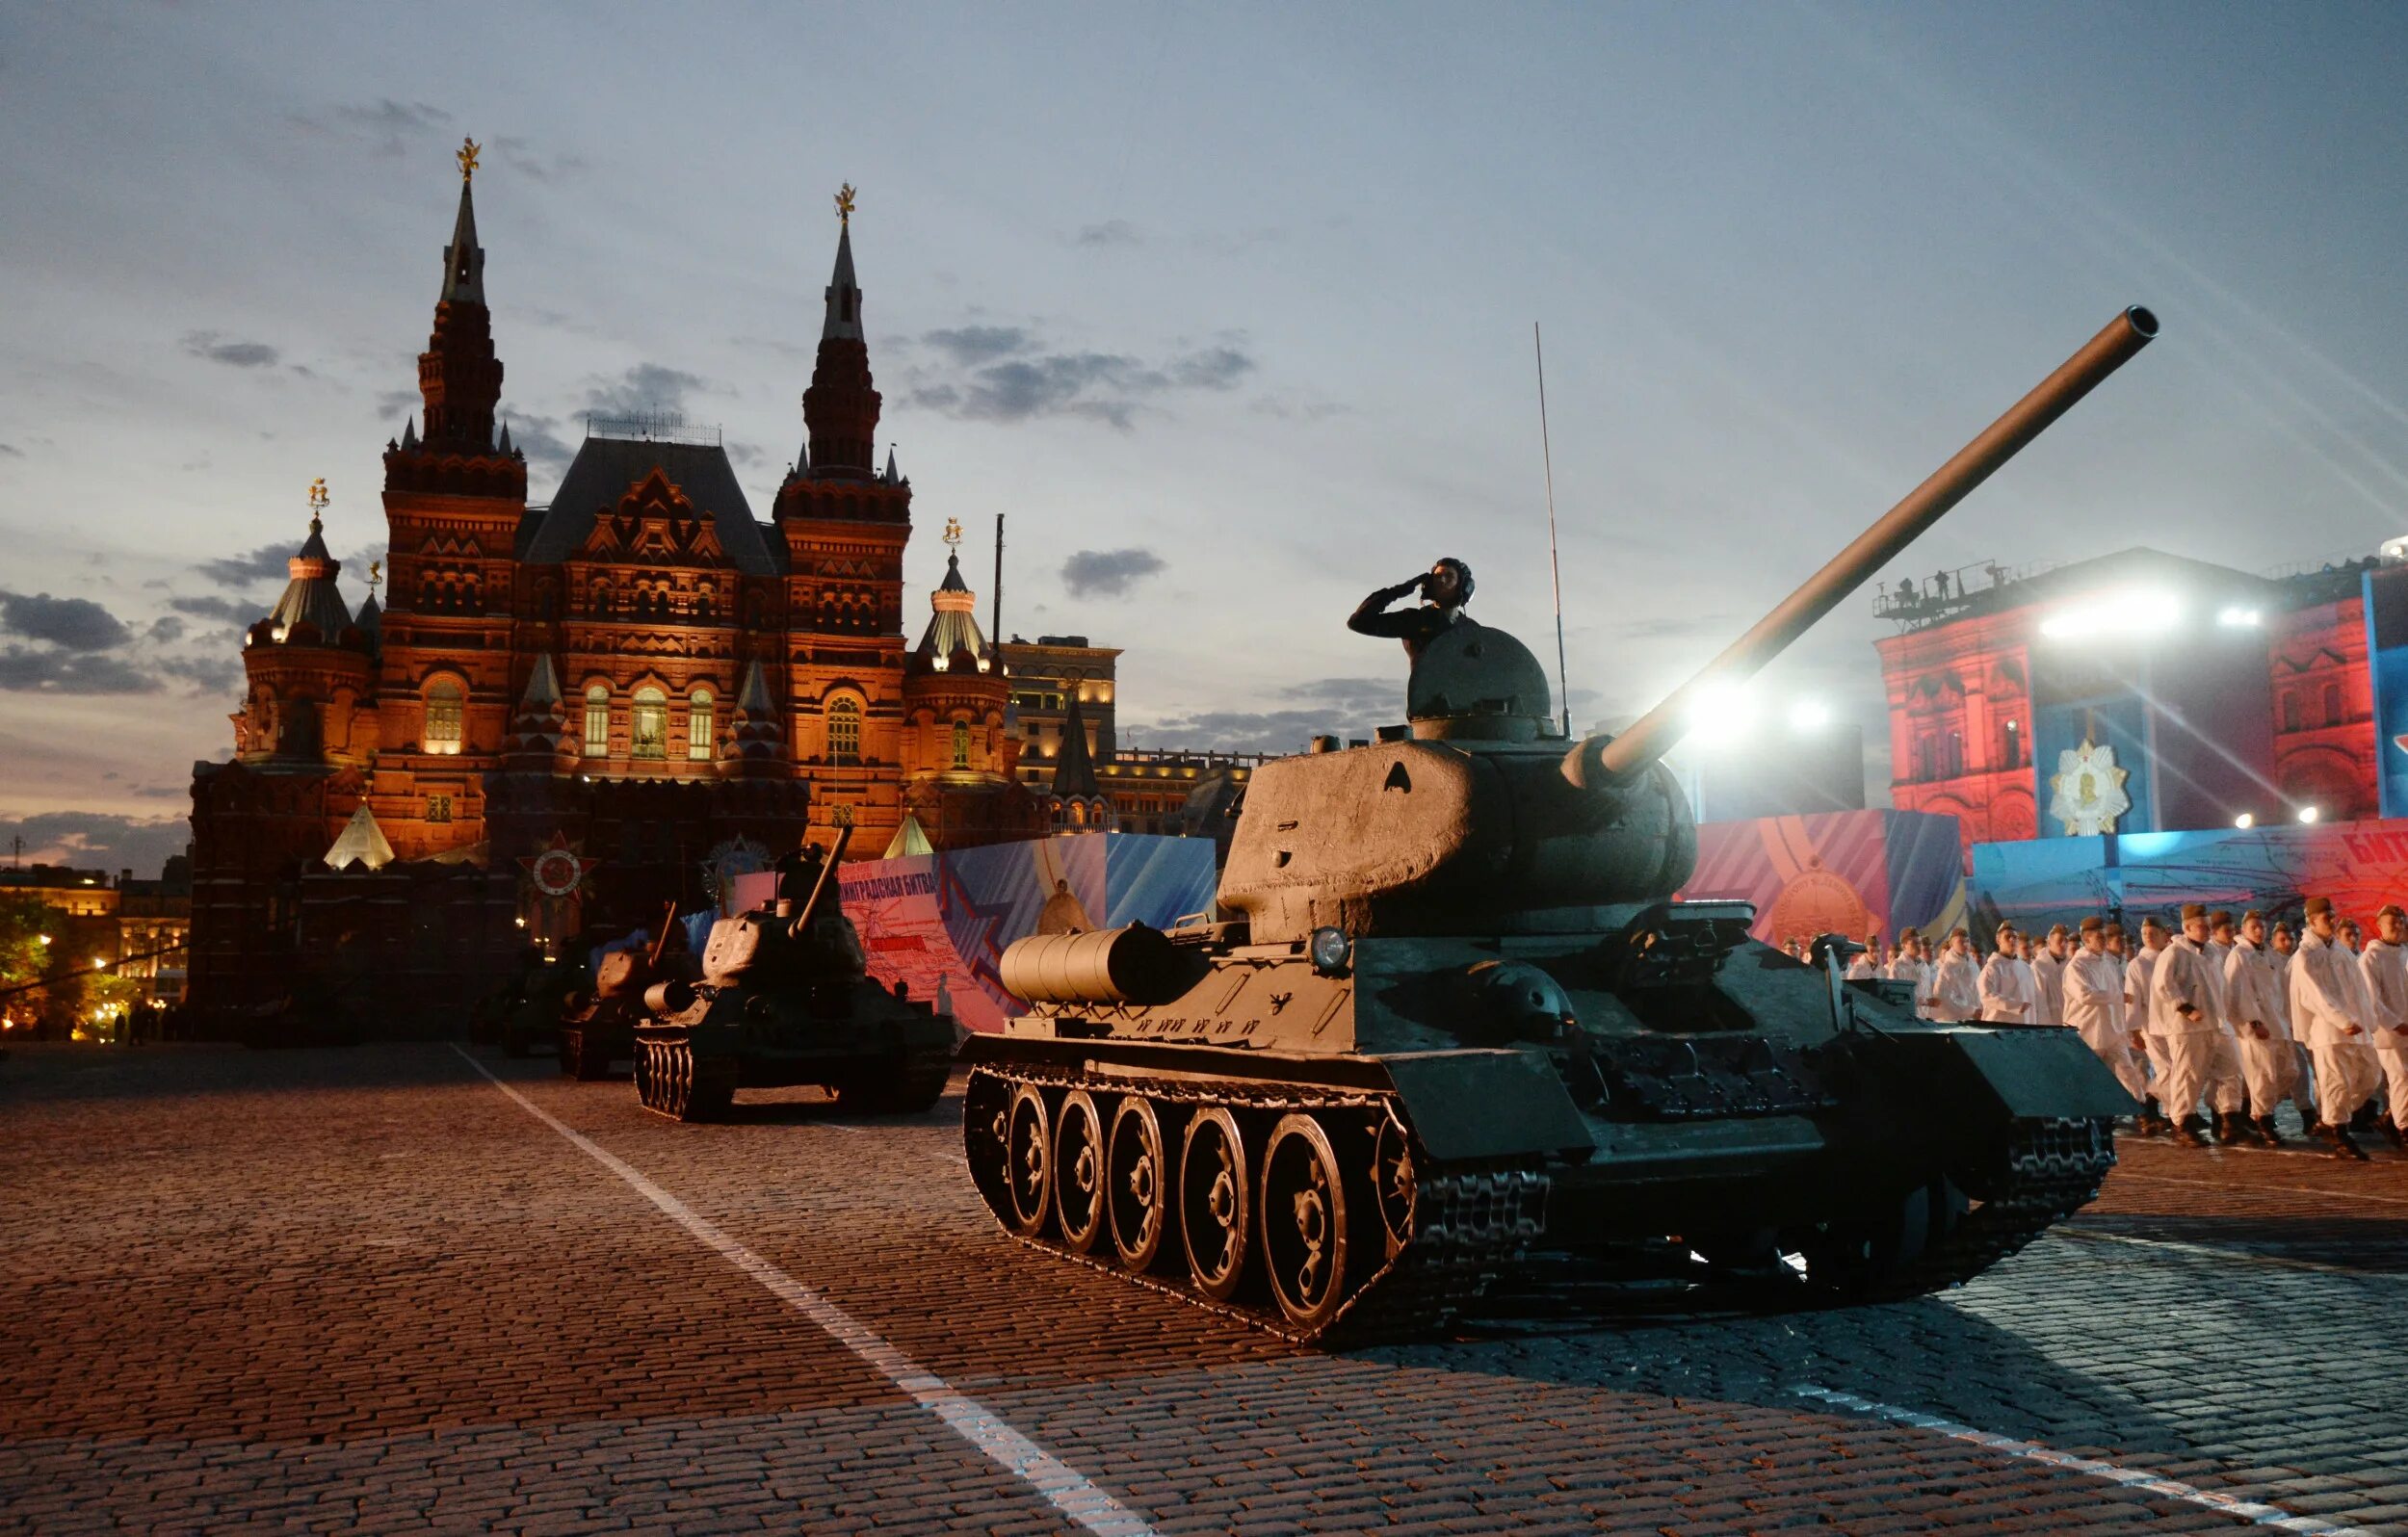 Предложение на параде. Т-34 на параде Победы 1945. Танк т-34 на красной площади. Т 34 на красной площади. Т-34 на параде Победы 1945 года на красной площади в Москве.